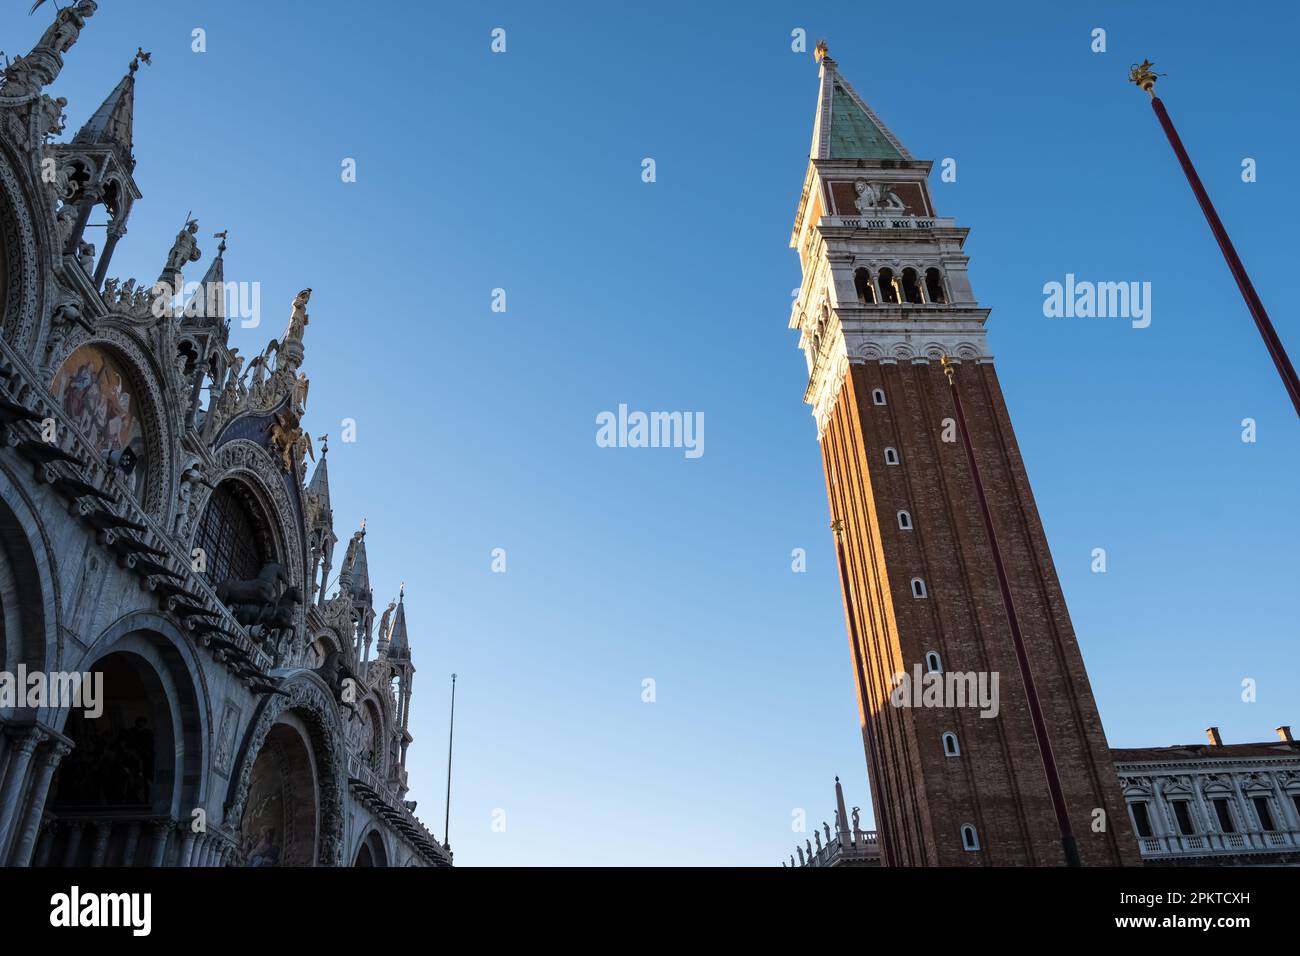 Detalle arquitectónico de la Piazza San Marco (Plaza de San Marcos), la principal plaza pública de Venecia, Italia Foto de stock